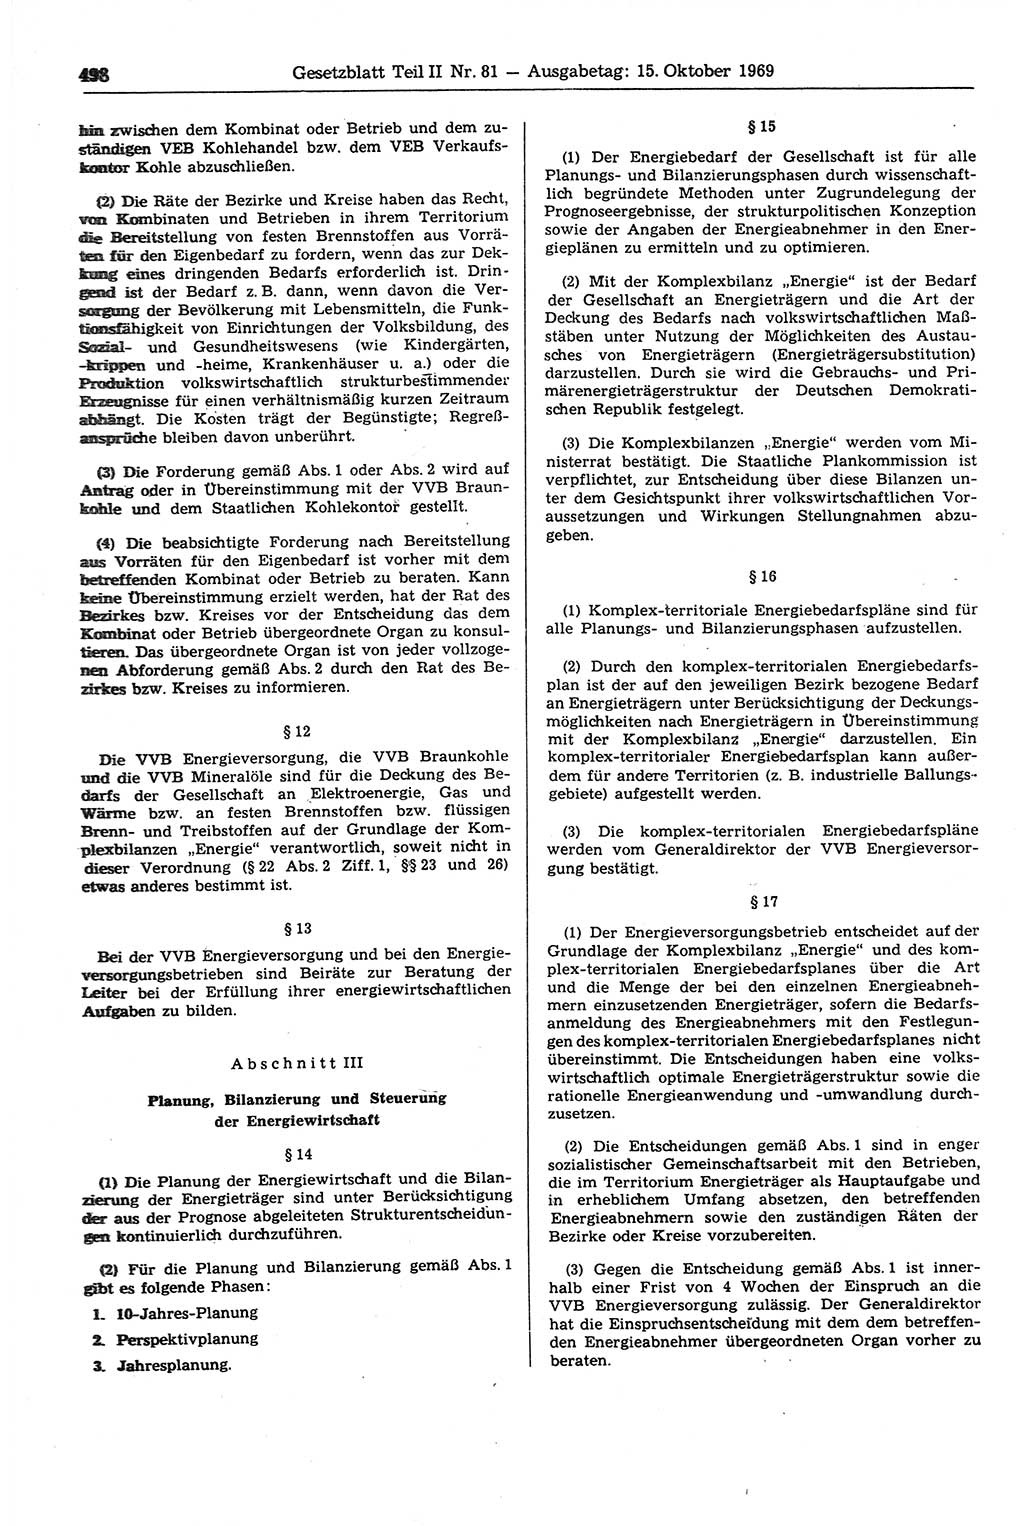 Gesetzblatt (GBl.) der Deutschen Demokratischen Republik (DDR) Teil ⅠⅠ 1969, Seite 498 (GBl. DDR ⅠⅠ 1969, S. 498)